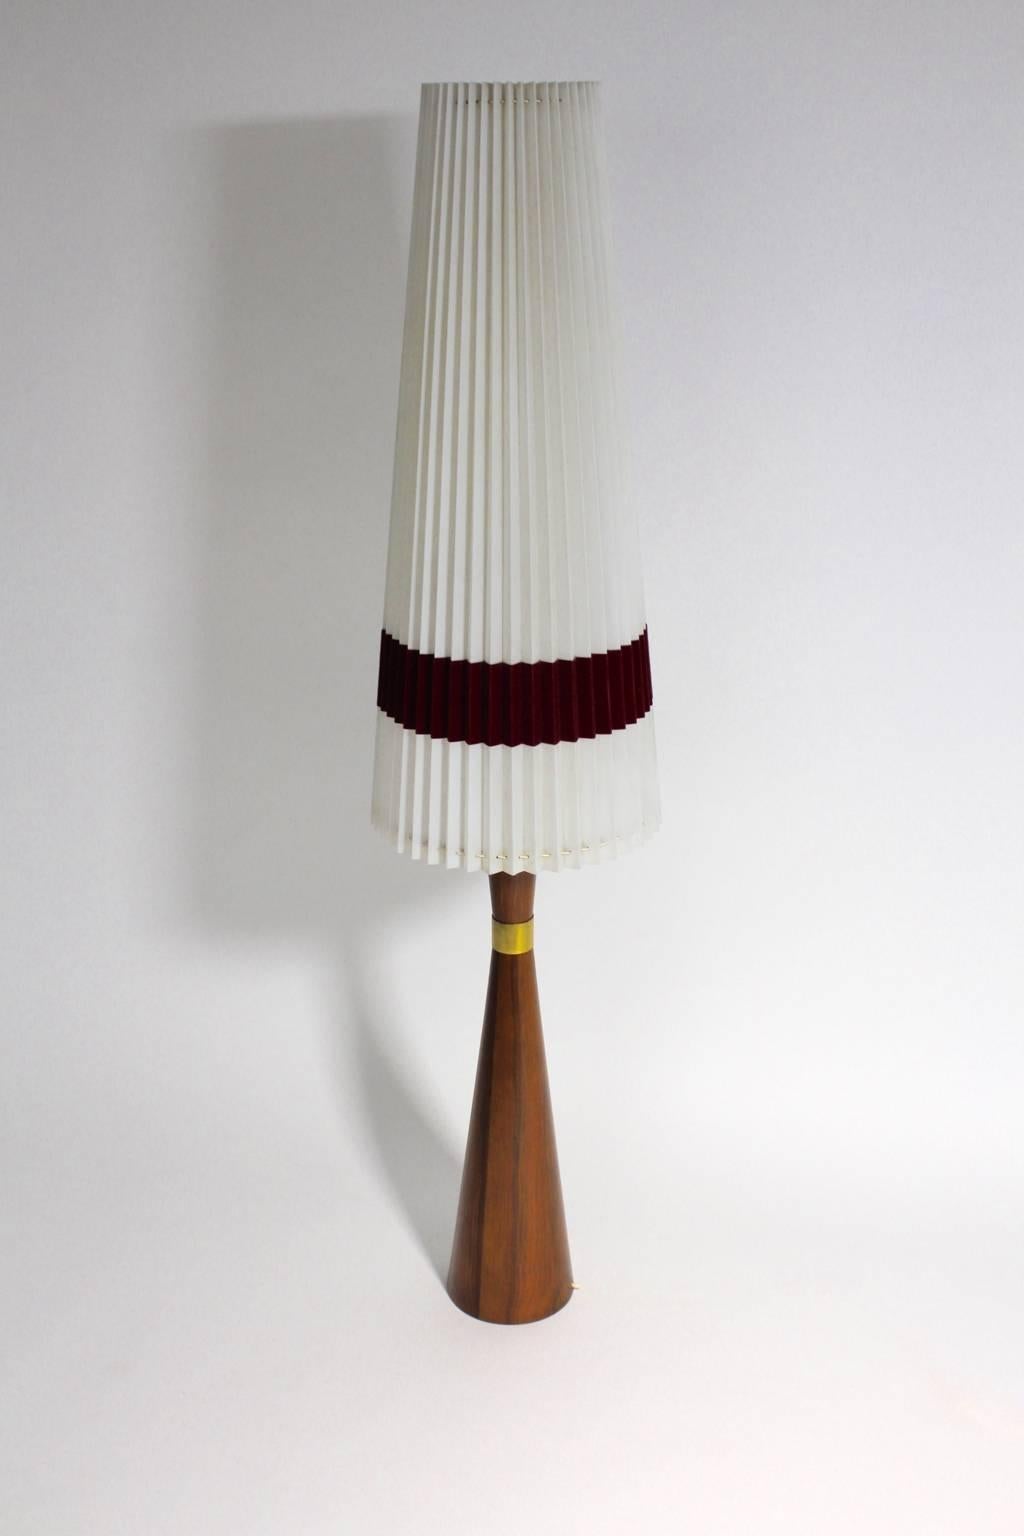 Lampe de table ou lampadaire en teck vintage moderne scandinave avec un beau placage de teck, qui est décoré avec des détails en laiton.
L'abat-jour original est en nylon avec un ruban de velours bordeaux à la base.